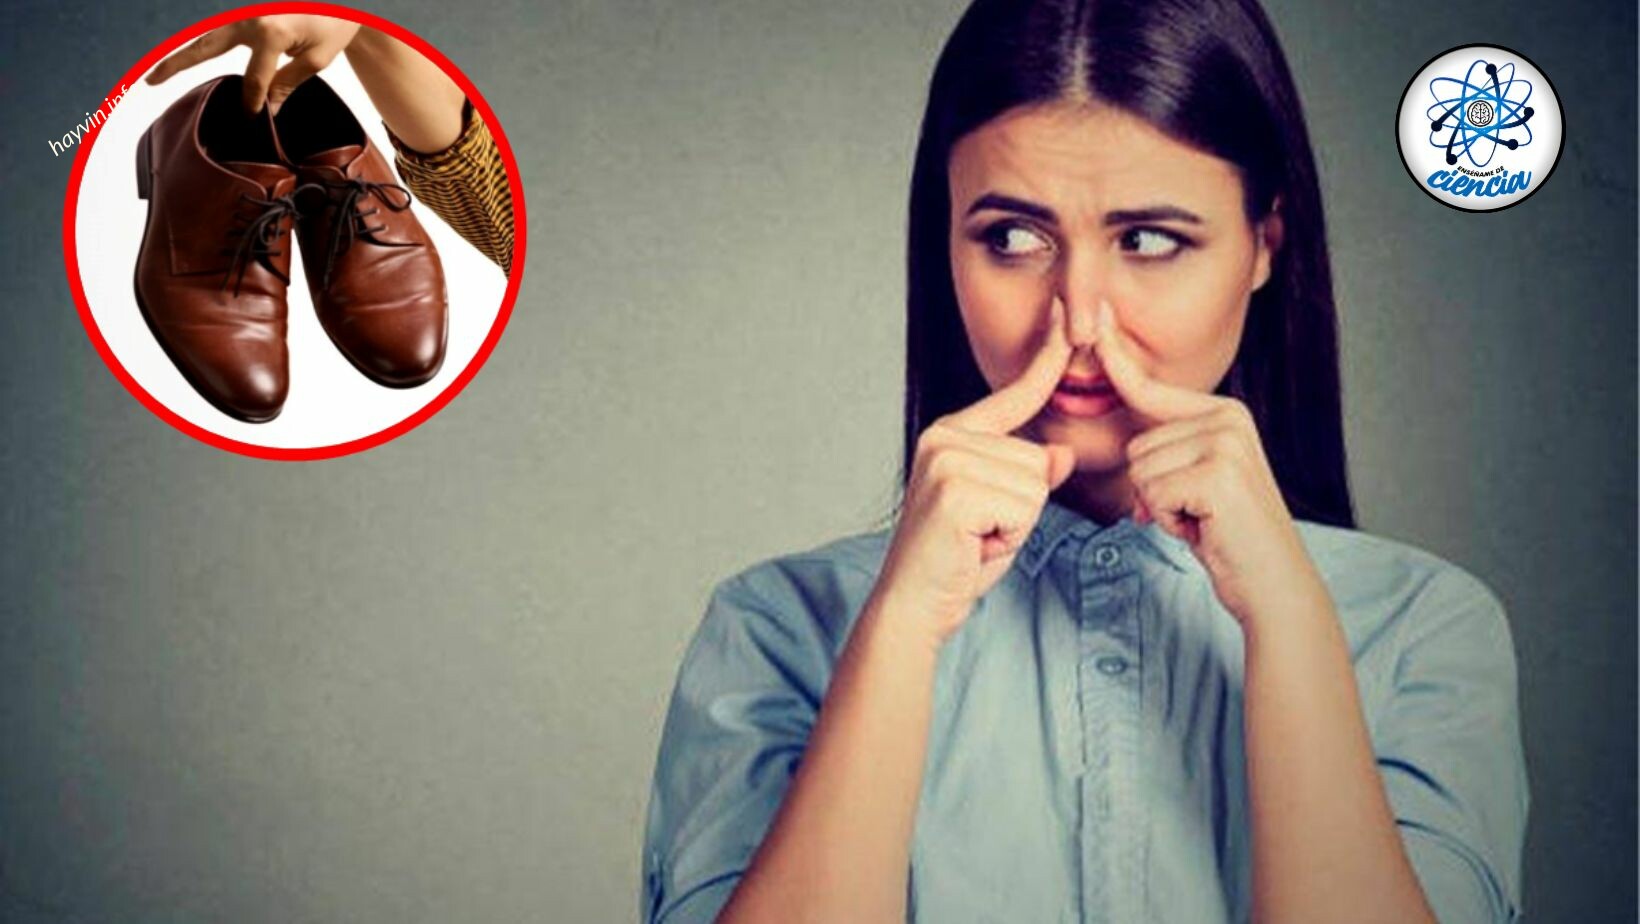 Erőteljes otthoni módszer a kellemetlen szag eltávolítására a cipőkből erőfeszítés nélkül